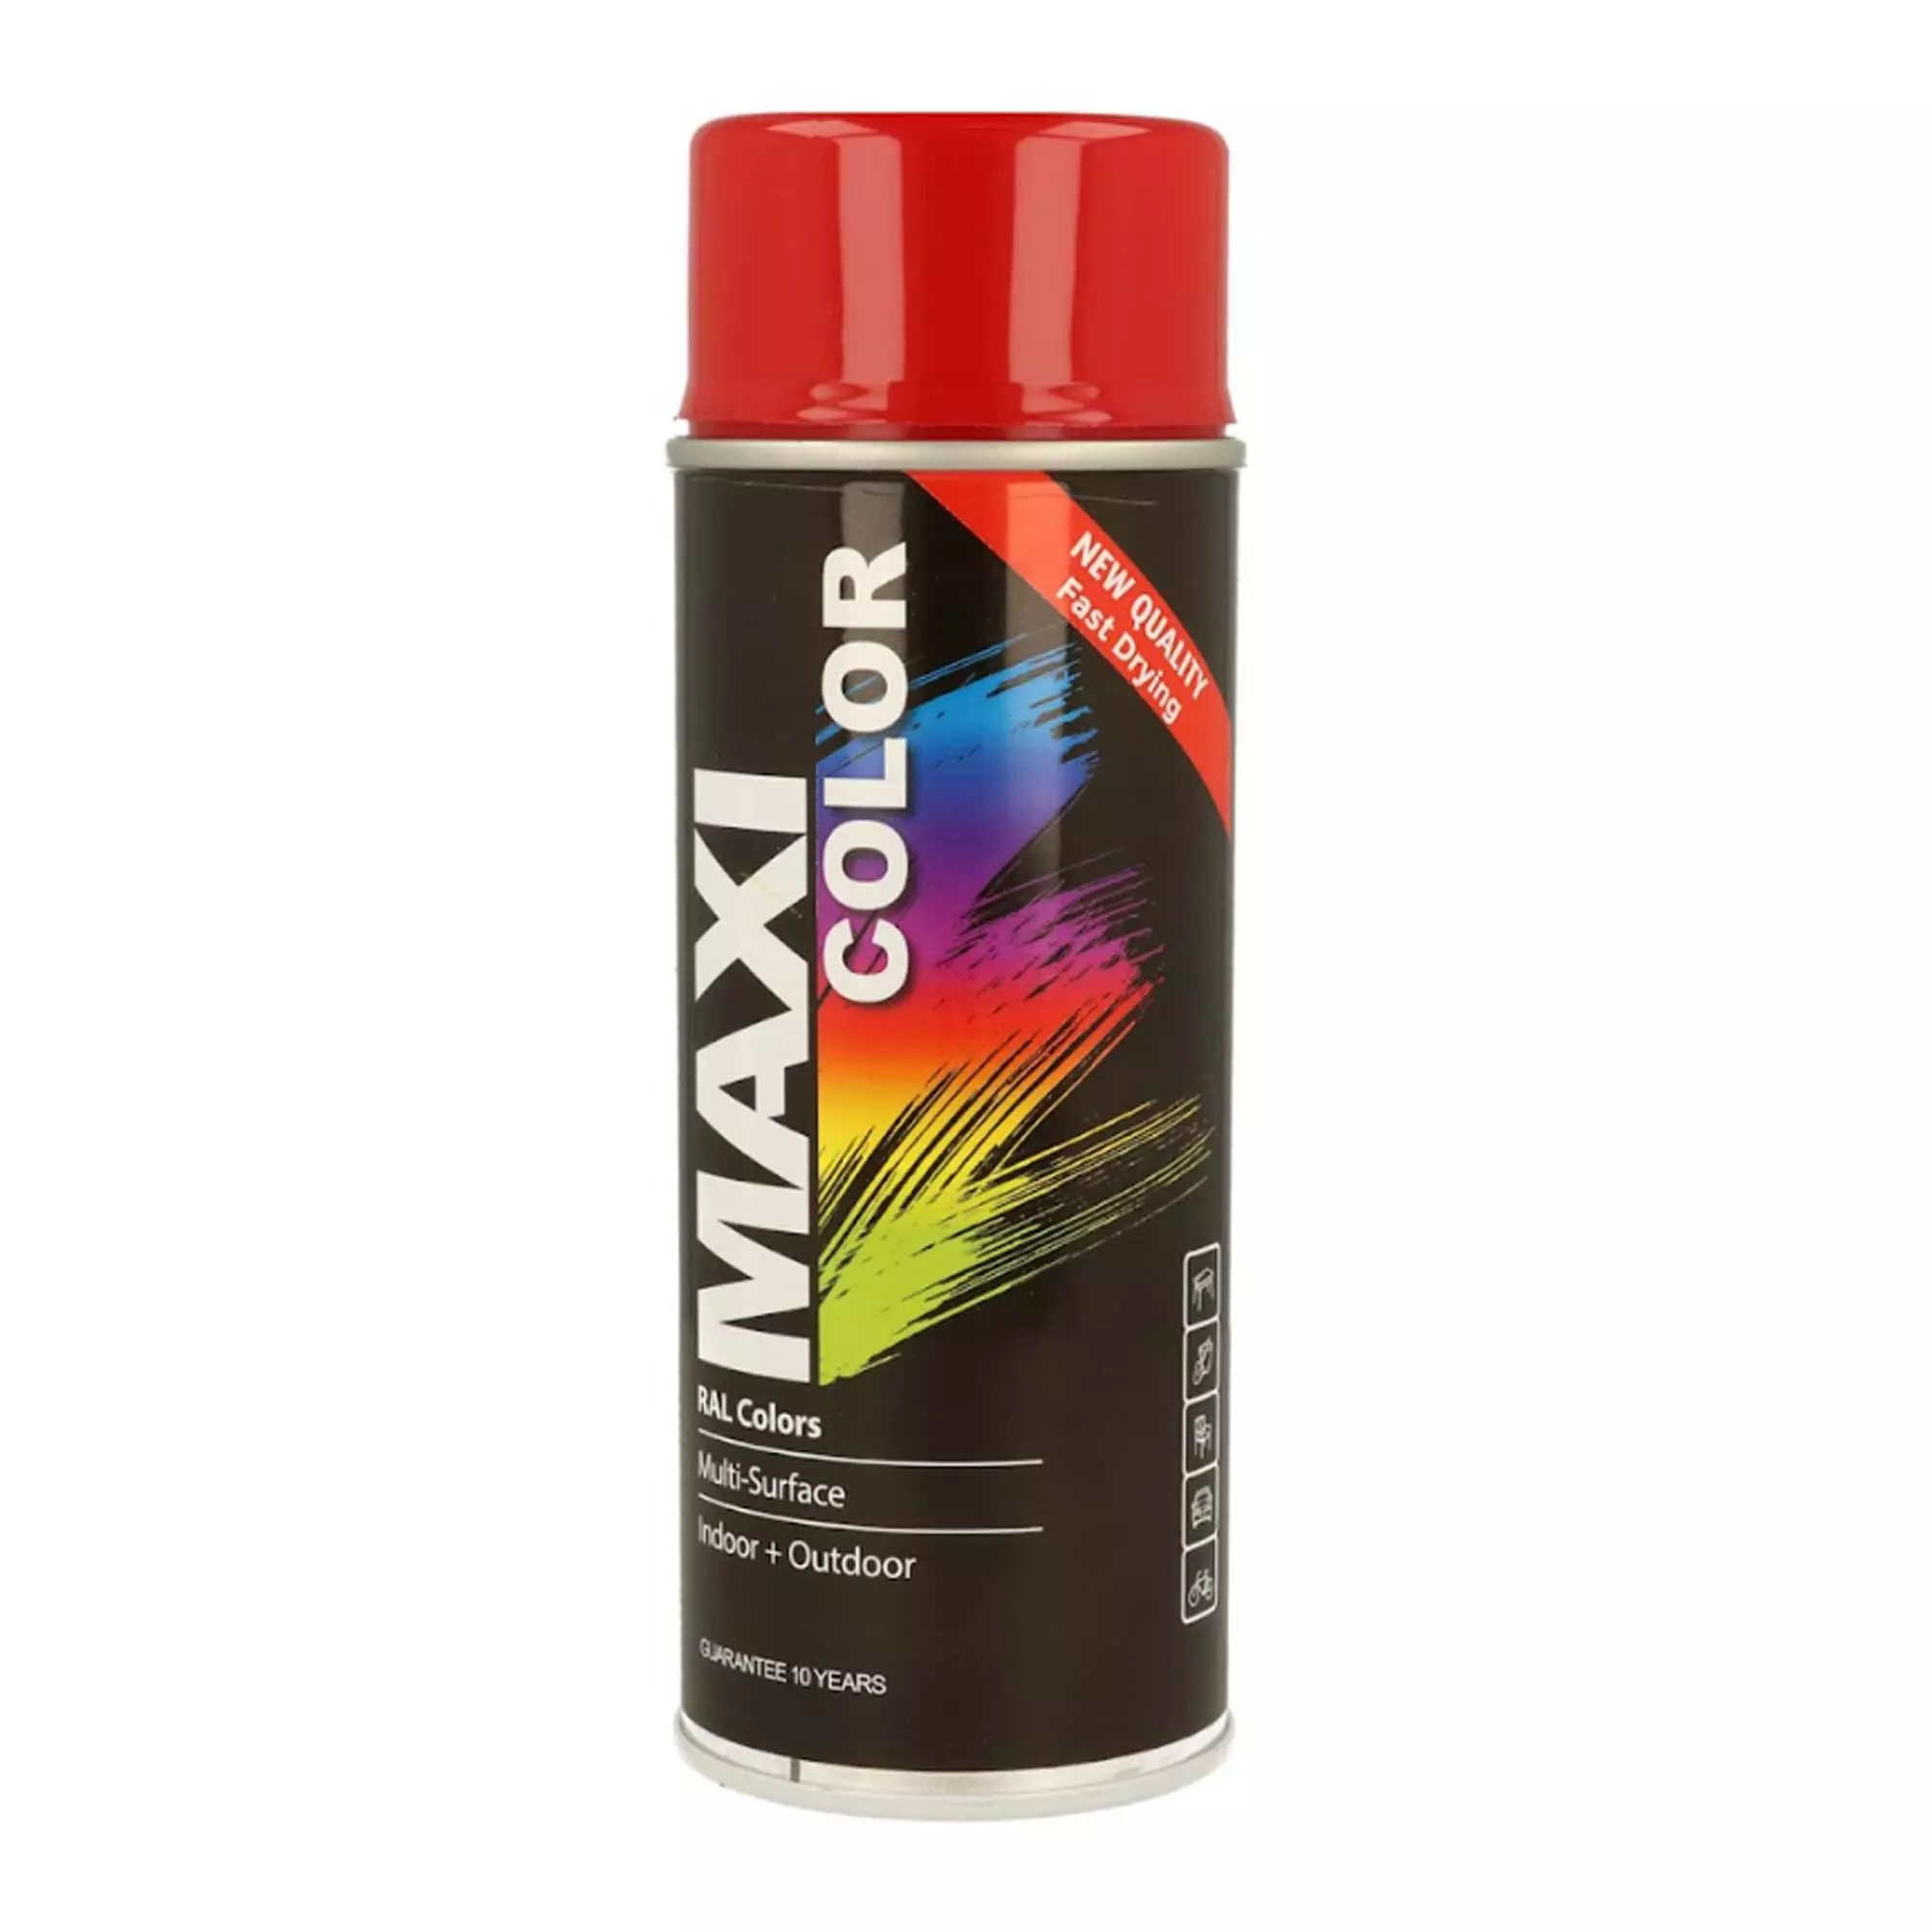 Эмаль MAXI COLOR аэрозольная декоративная карминий-красный 400 мл (MX3002)